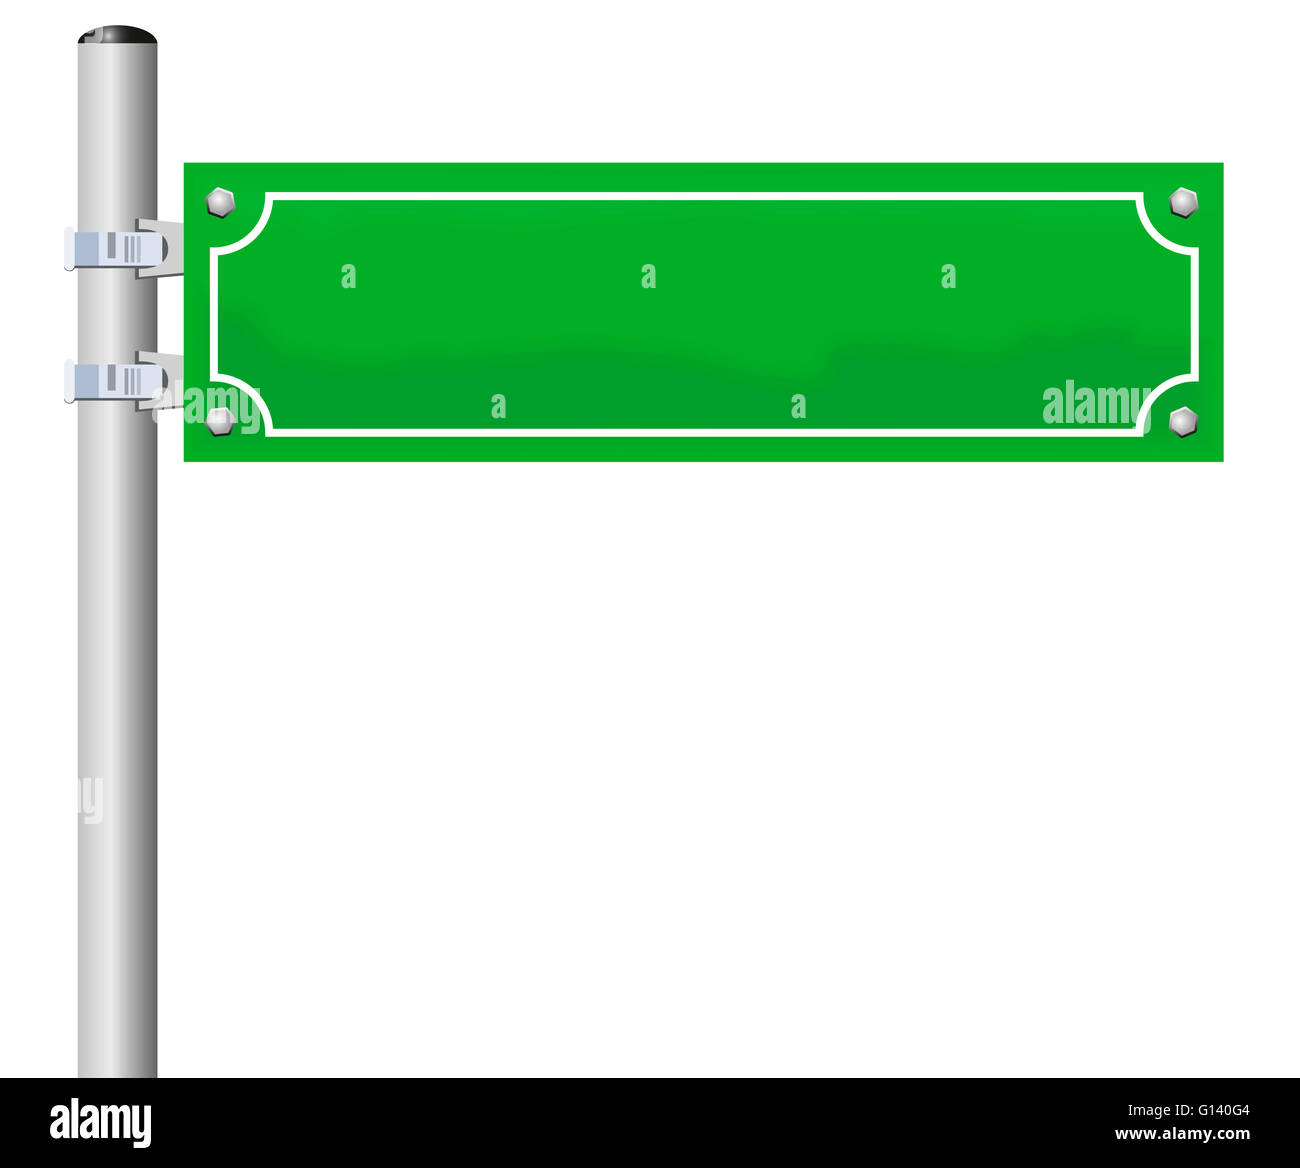 Straßenschild - Rohling, grün, an einem Mast befestigt. ICHIllustration auf weißem Hintergrund. Stockfoto